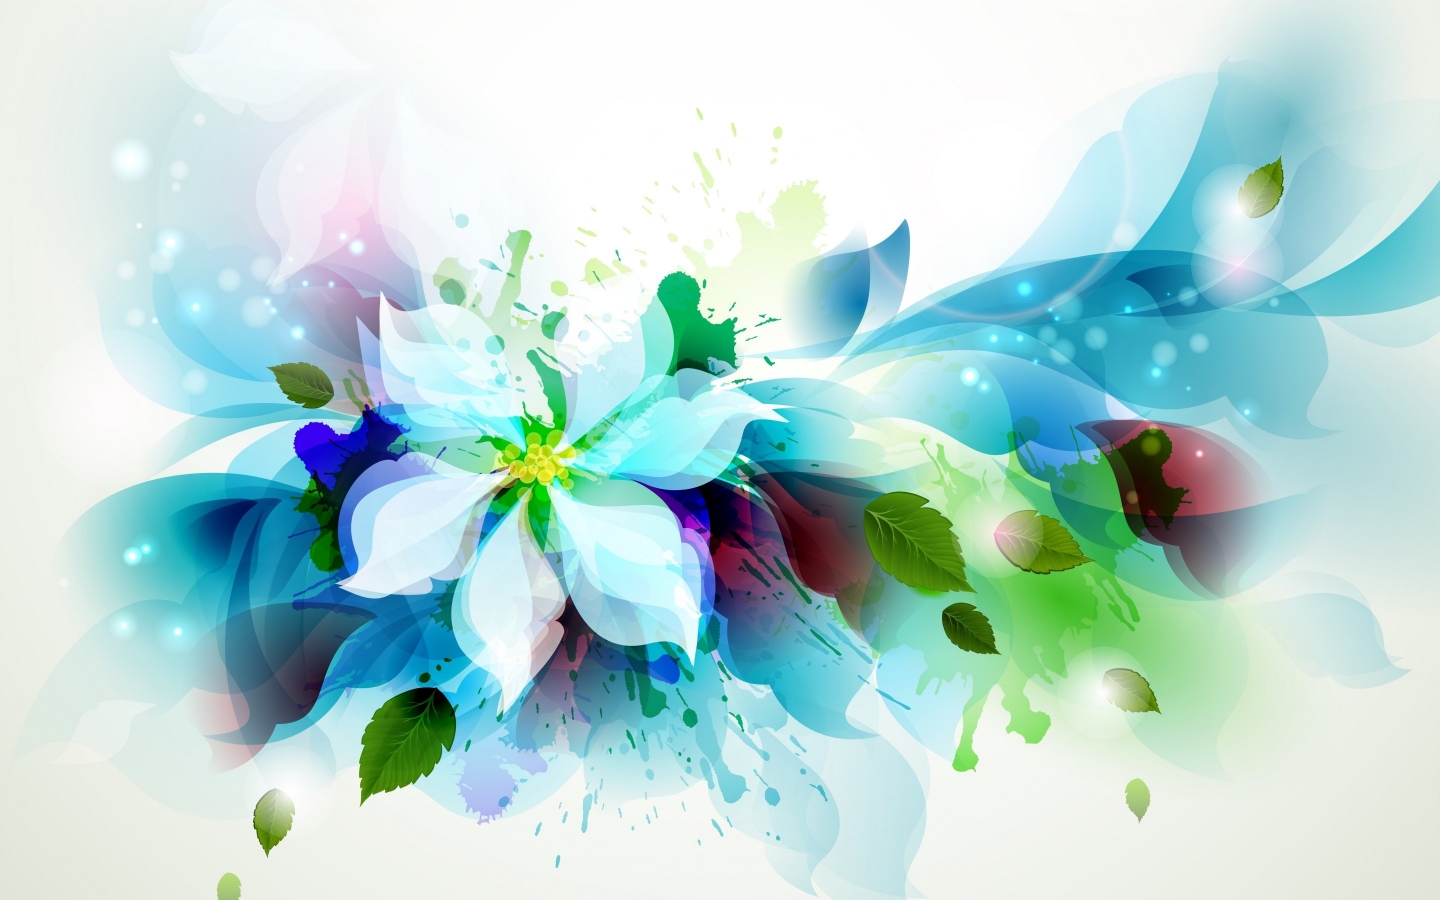 Beautiful Flower Art for 1440 x 900 widescreen resolution